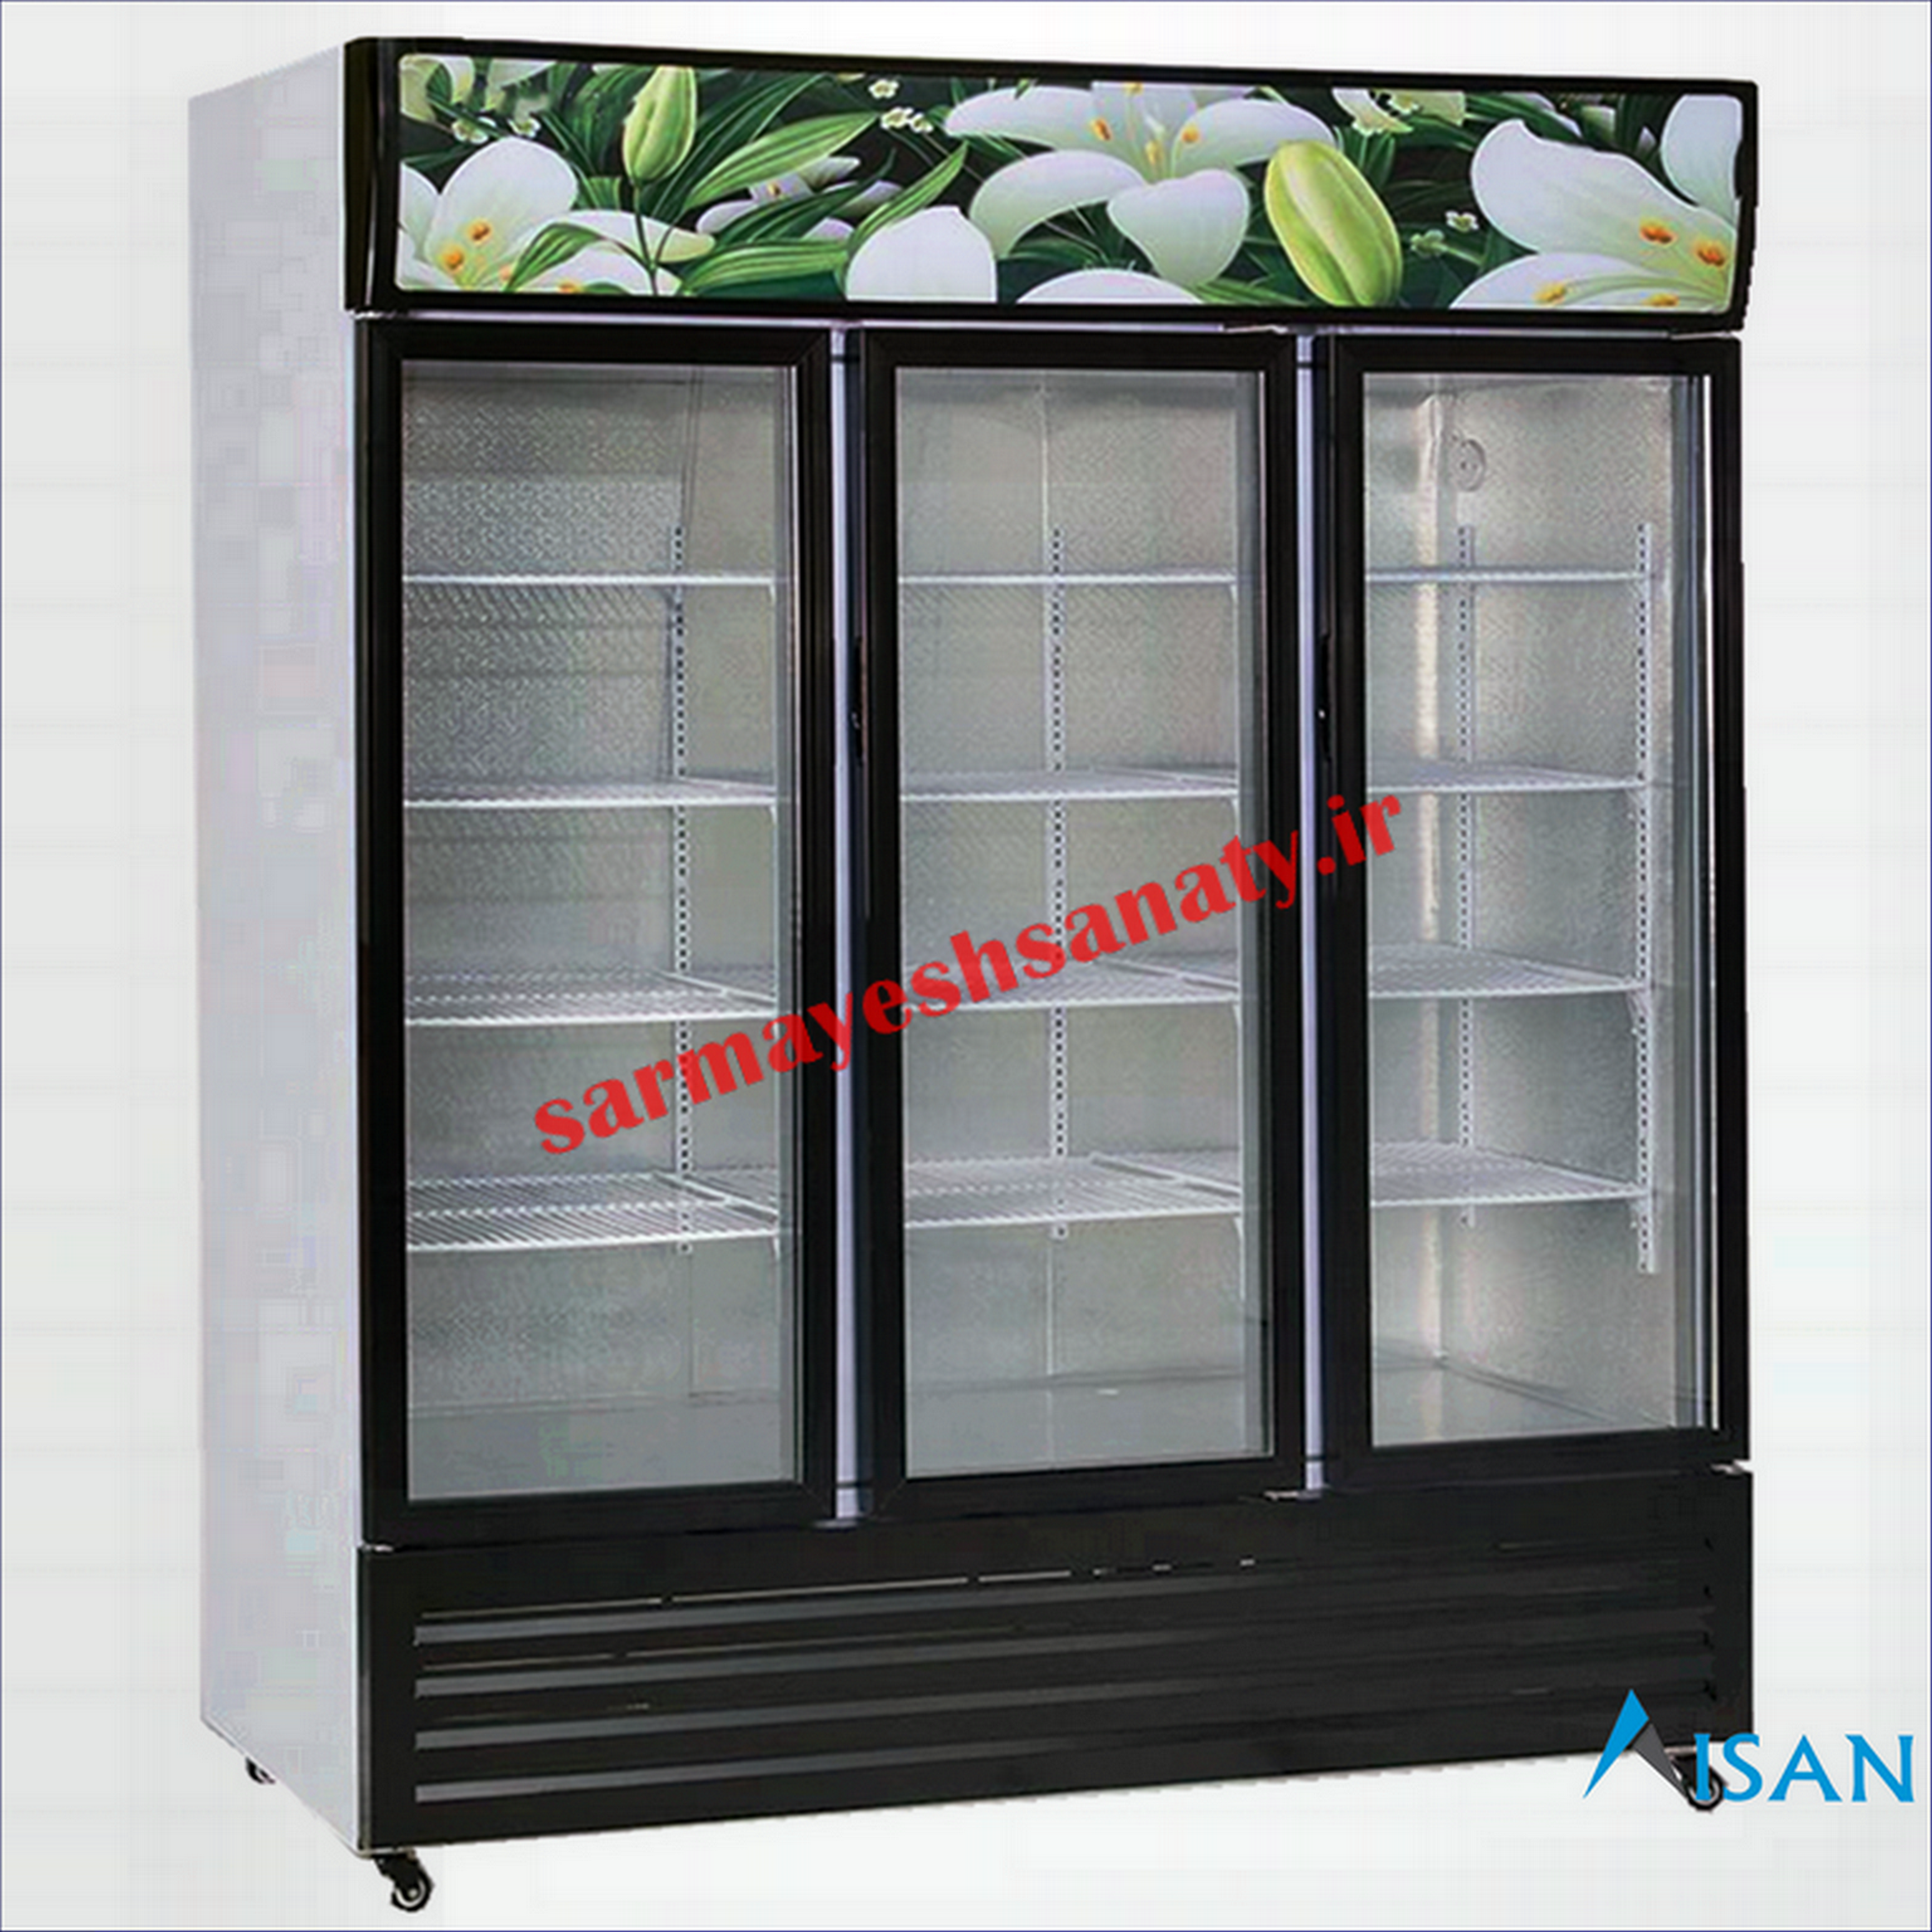 فروش یخچال ویترینی در اصفهان با قیمت تولیدی